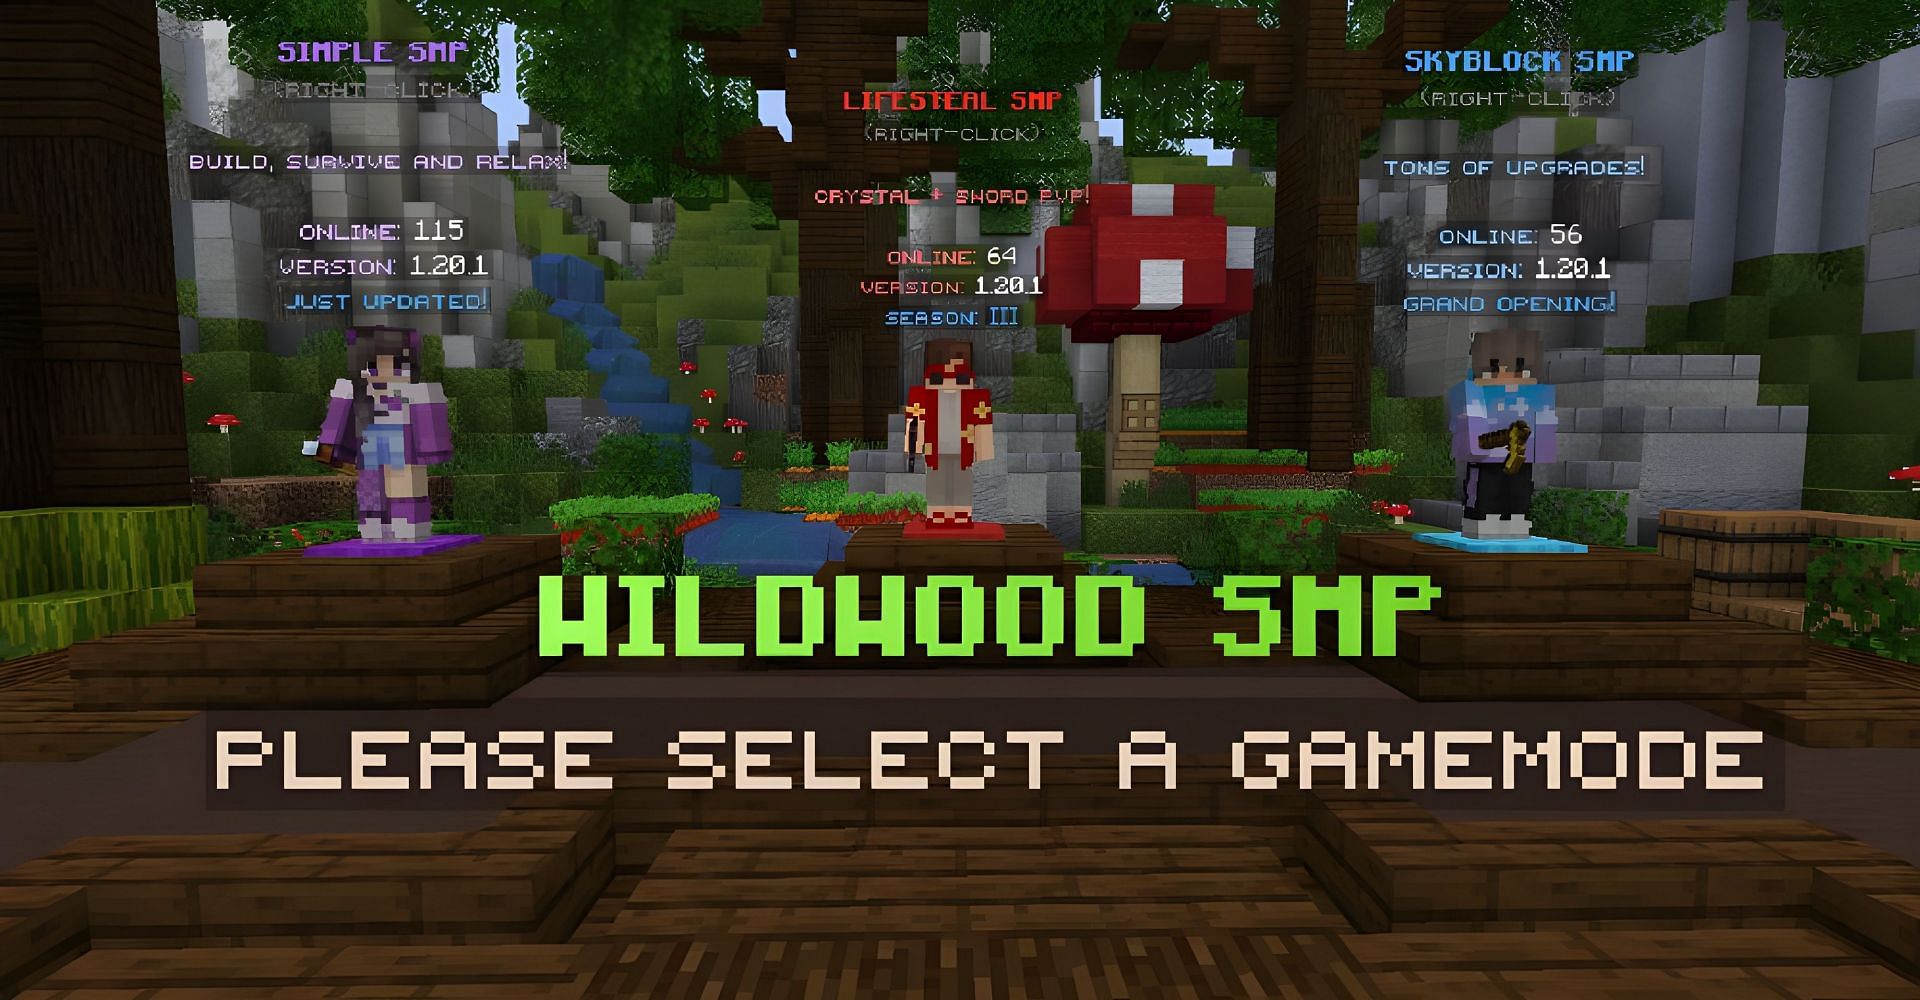 WildWood SMP is a thriving server (Image via Mojang)